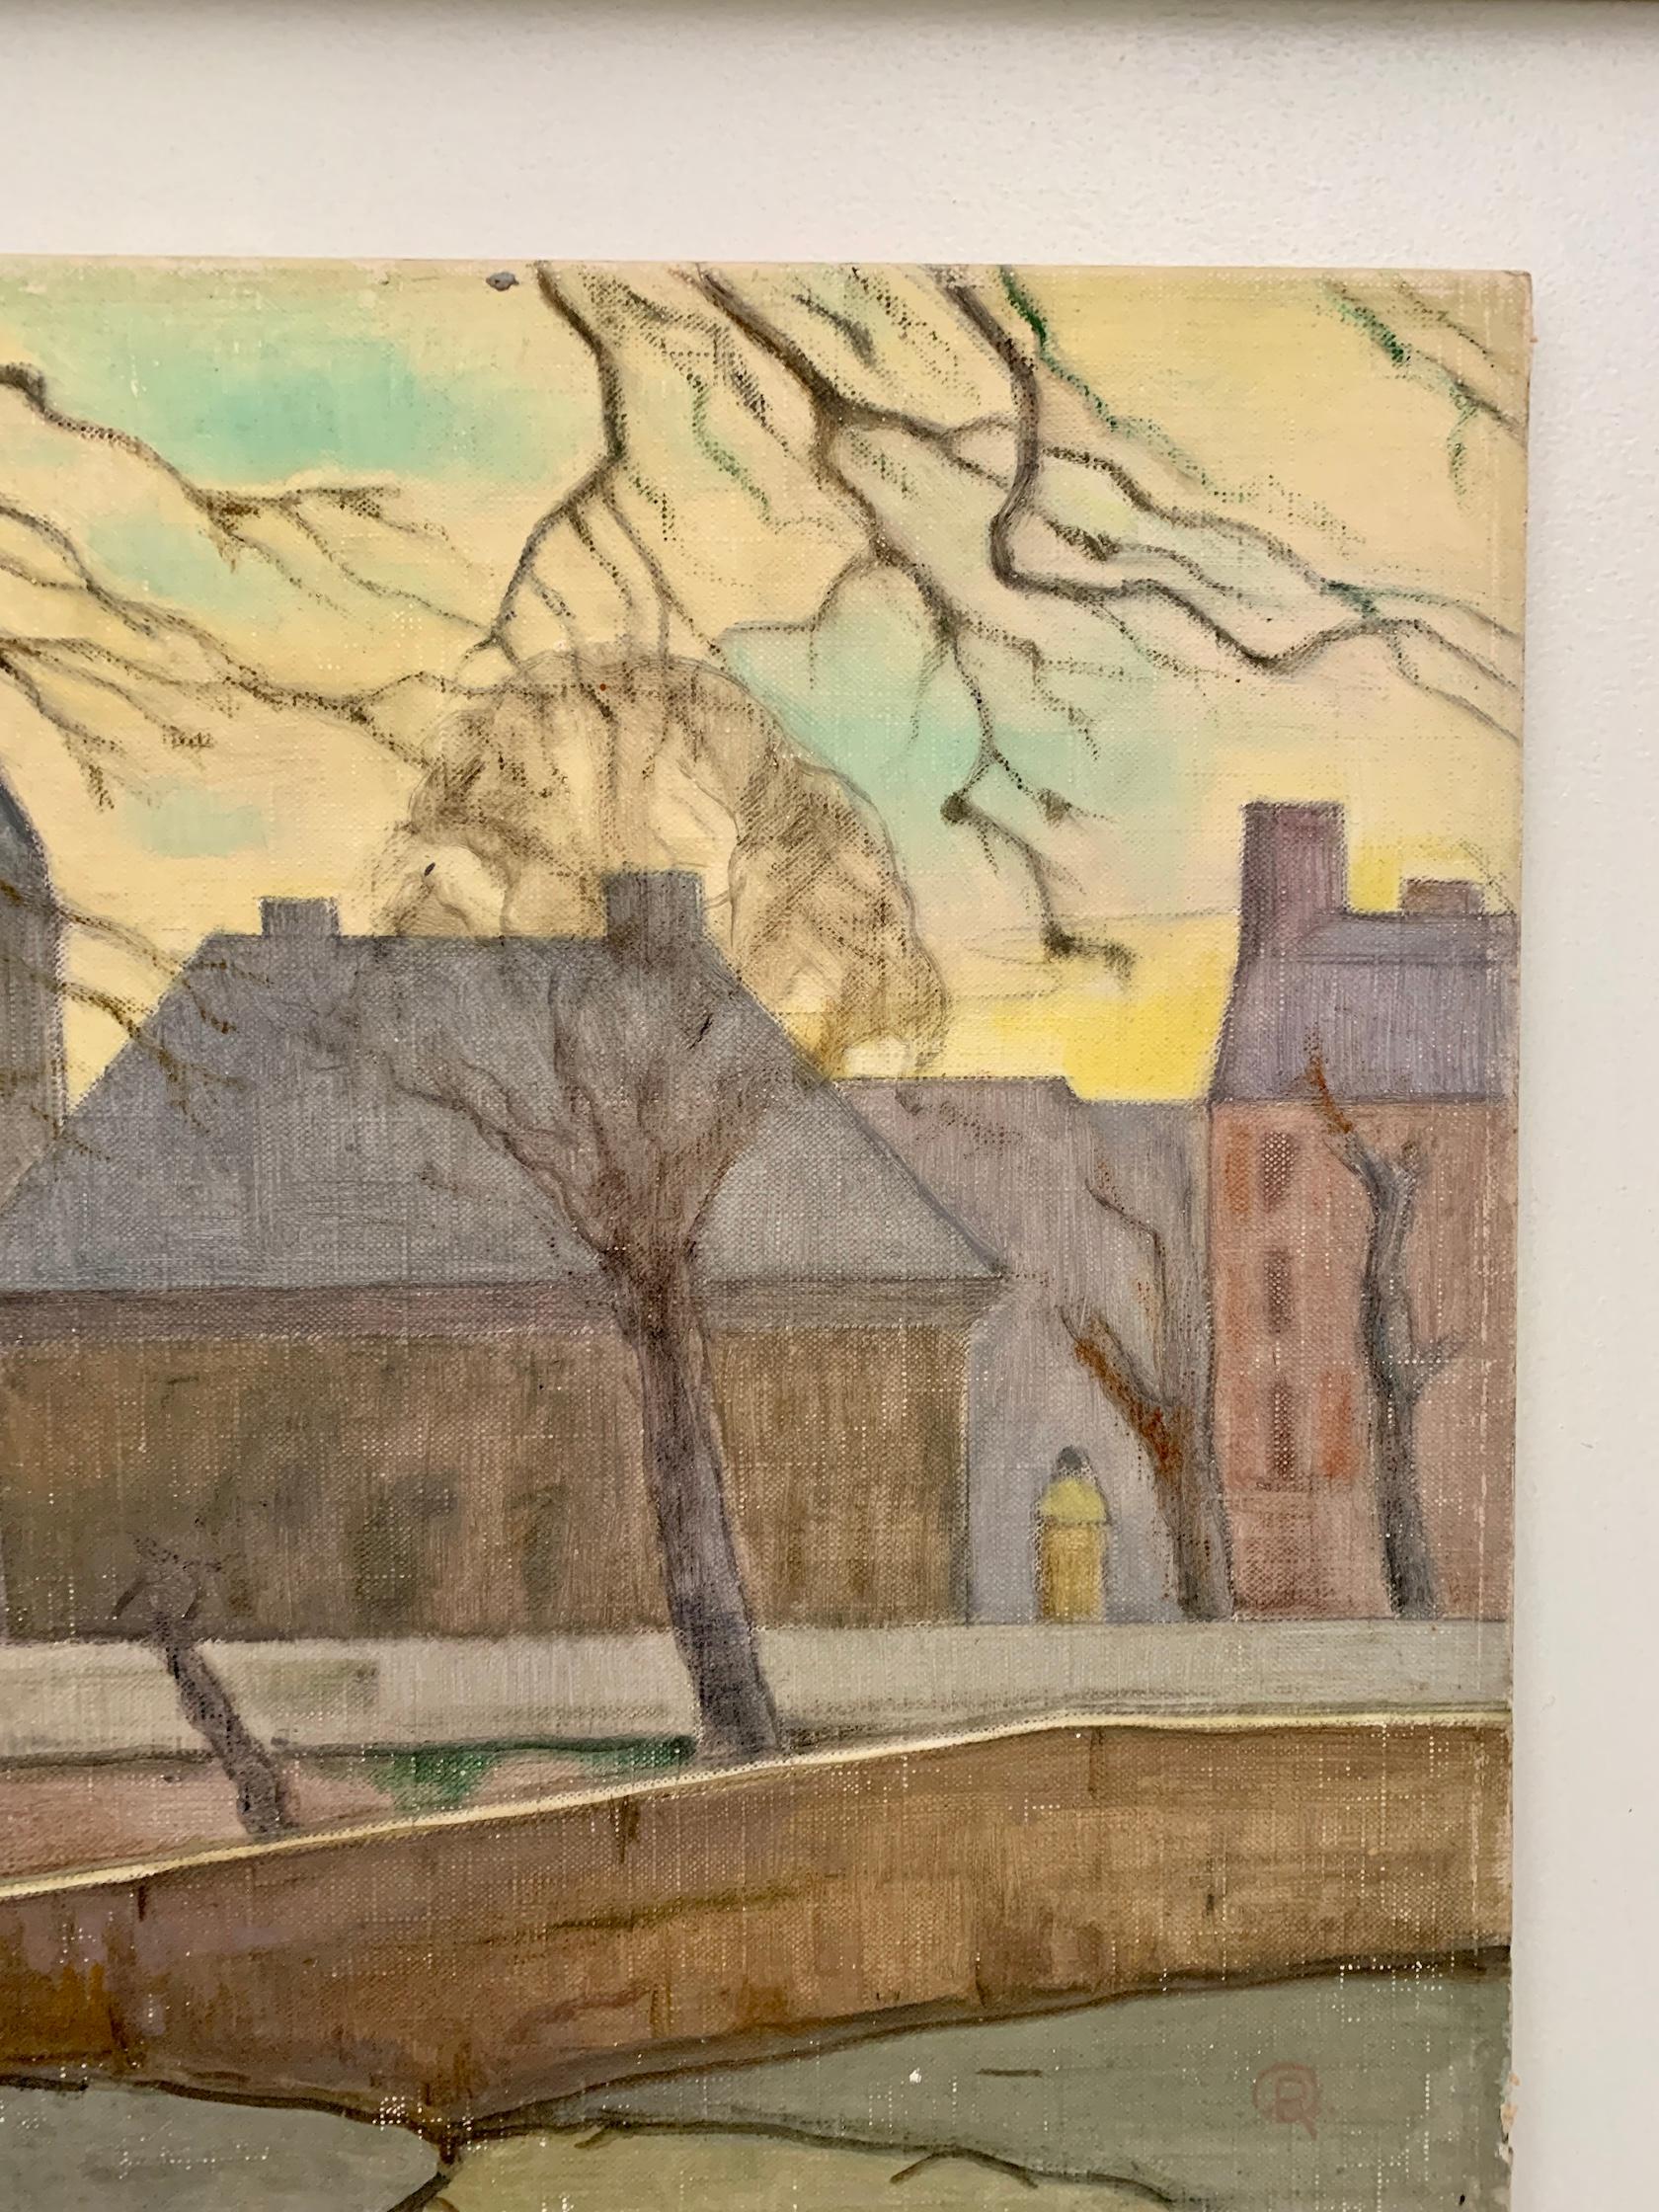 Ausgezeichneter französischer Impressionist der Jahrhundertmitte, Stadtansicht mit Kathedrale in Paris, Frankreich

Der Maler war um die Mitte des 20. Jahrhunderts tätig und malte Landschaften, Porträts und Stadtszenen. 

Es handelt sich um das